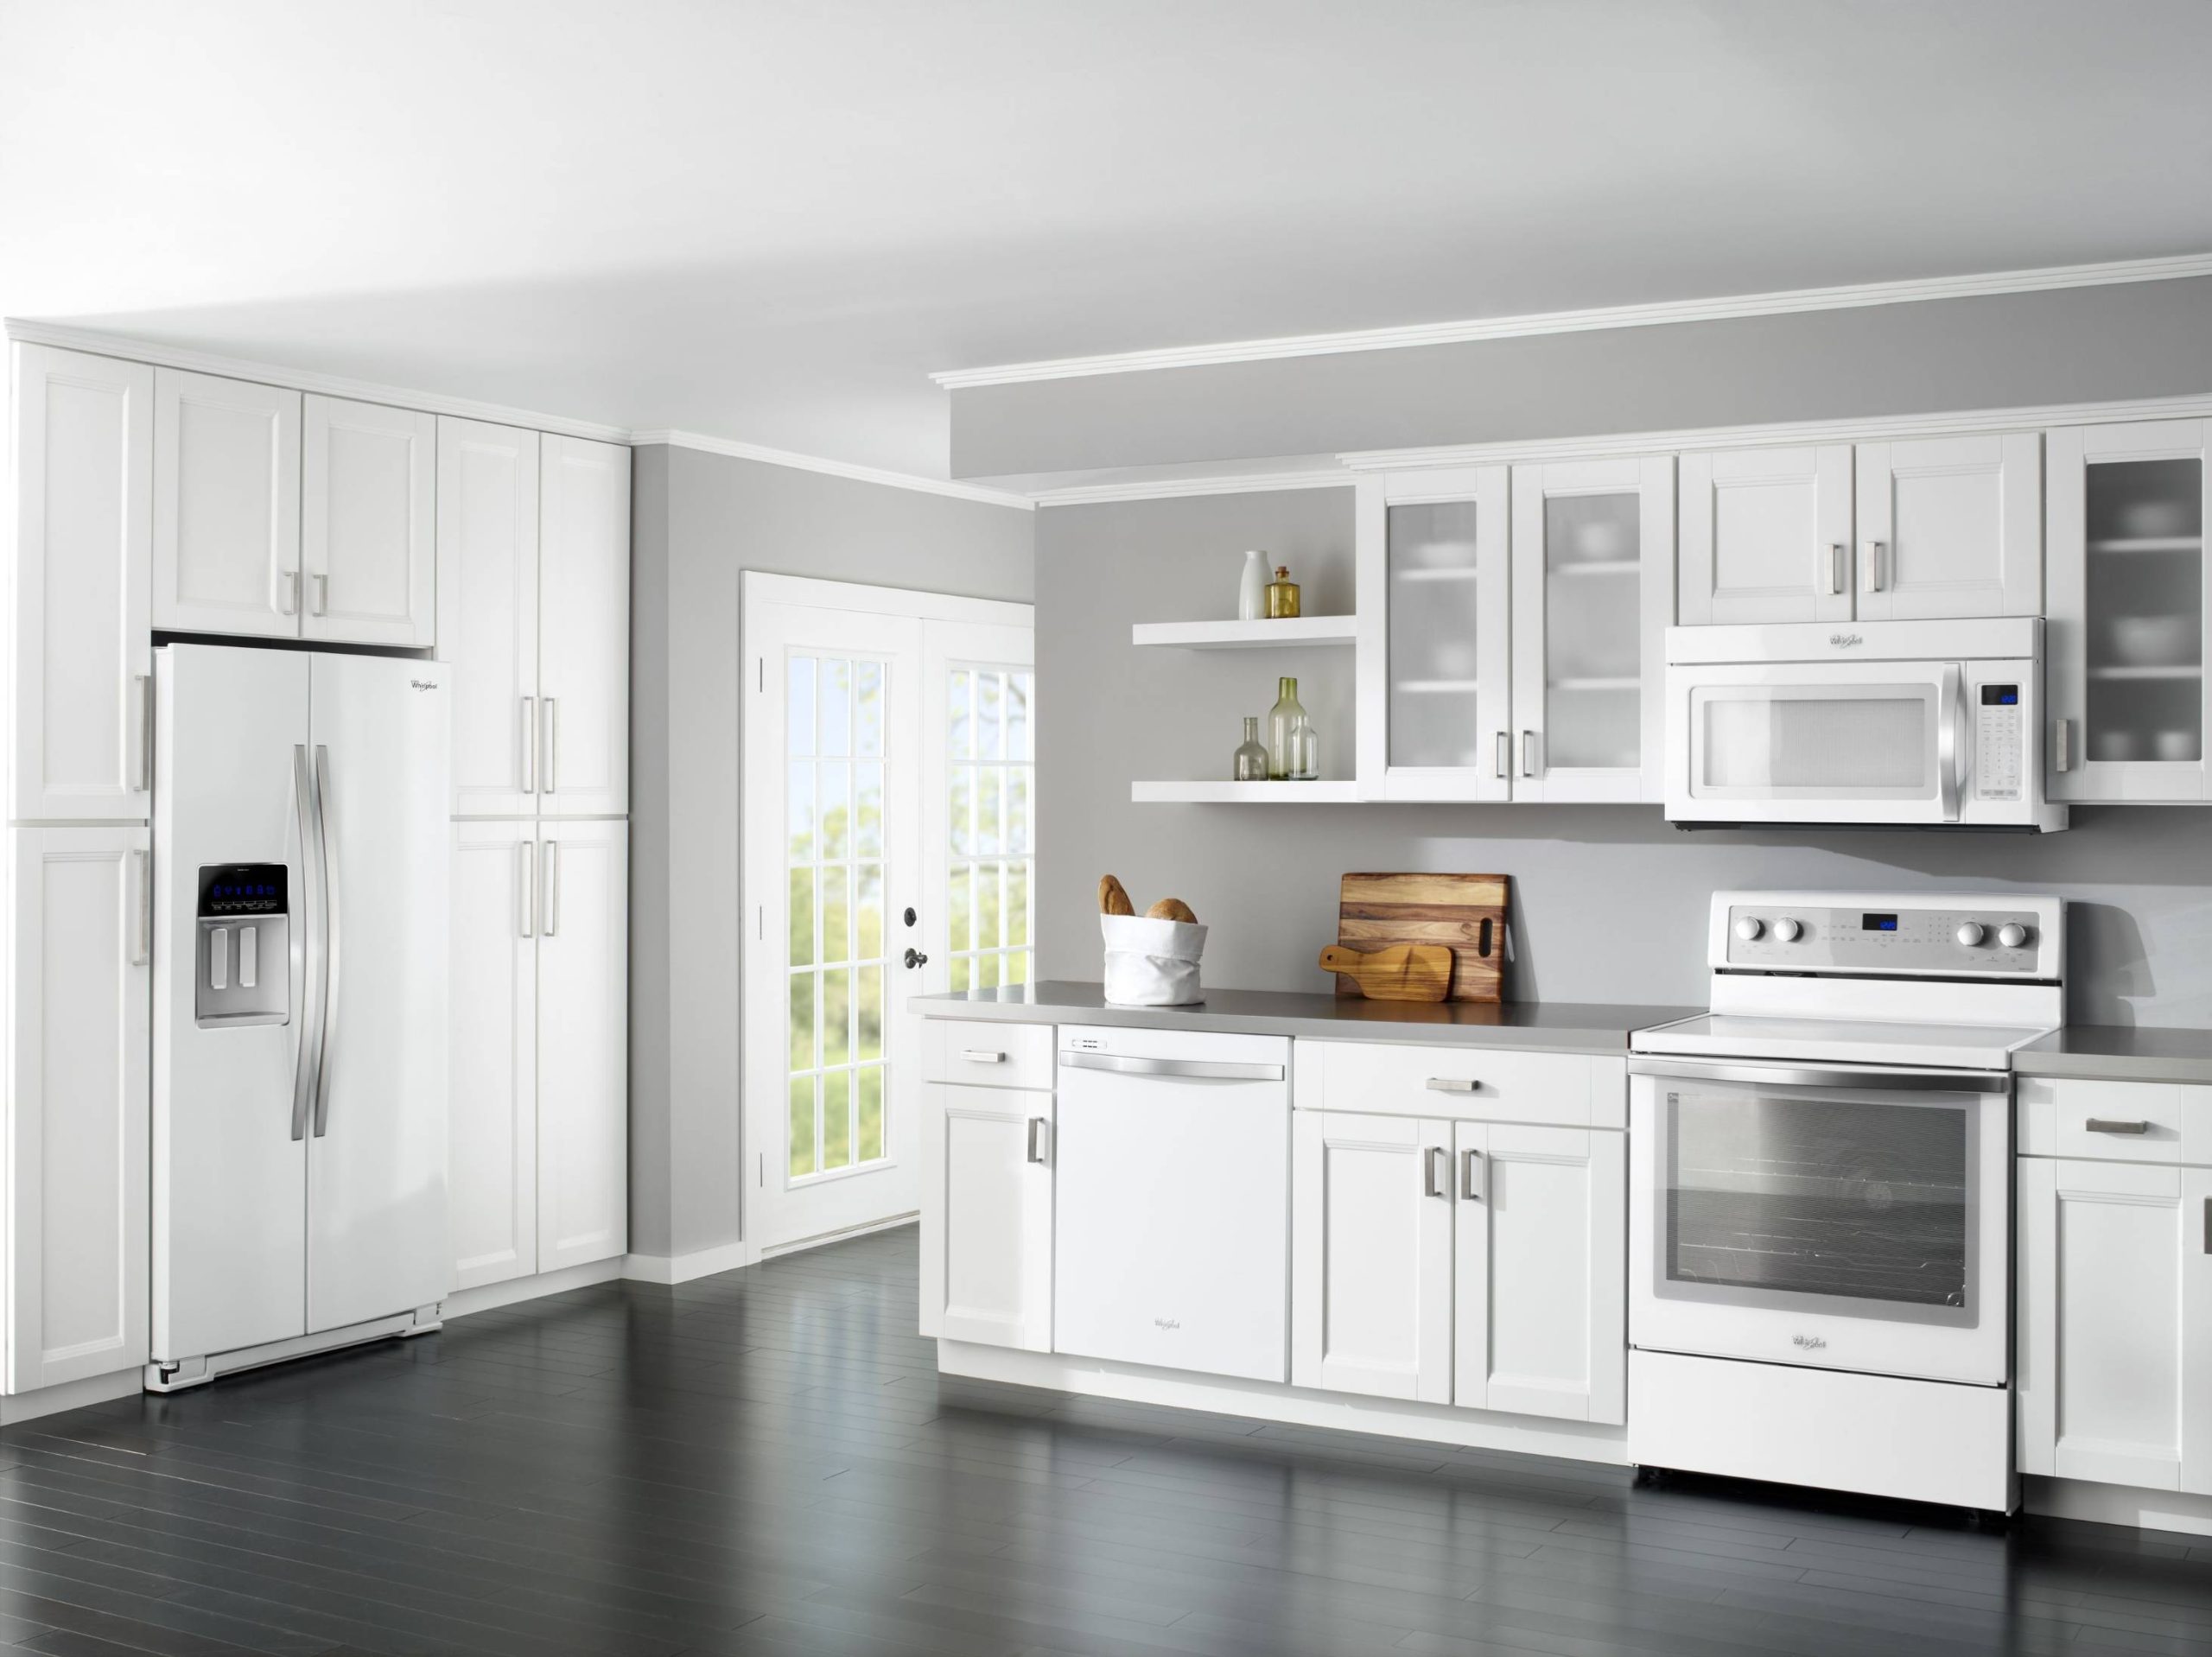 Will Schrock Alabaster Kitchen Cabinets Match My White Appliances?